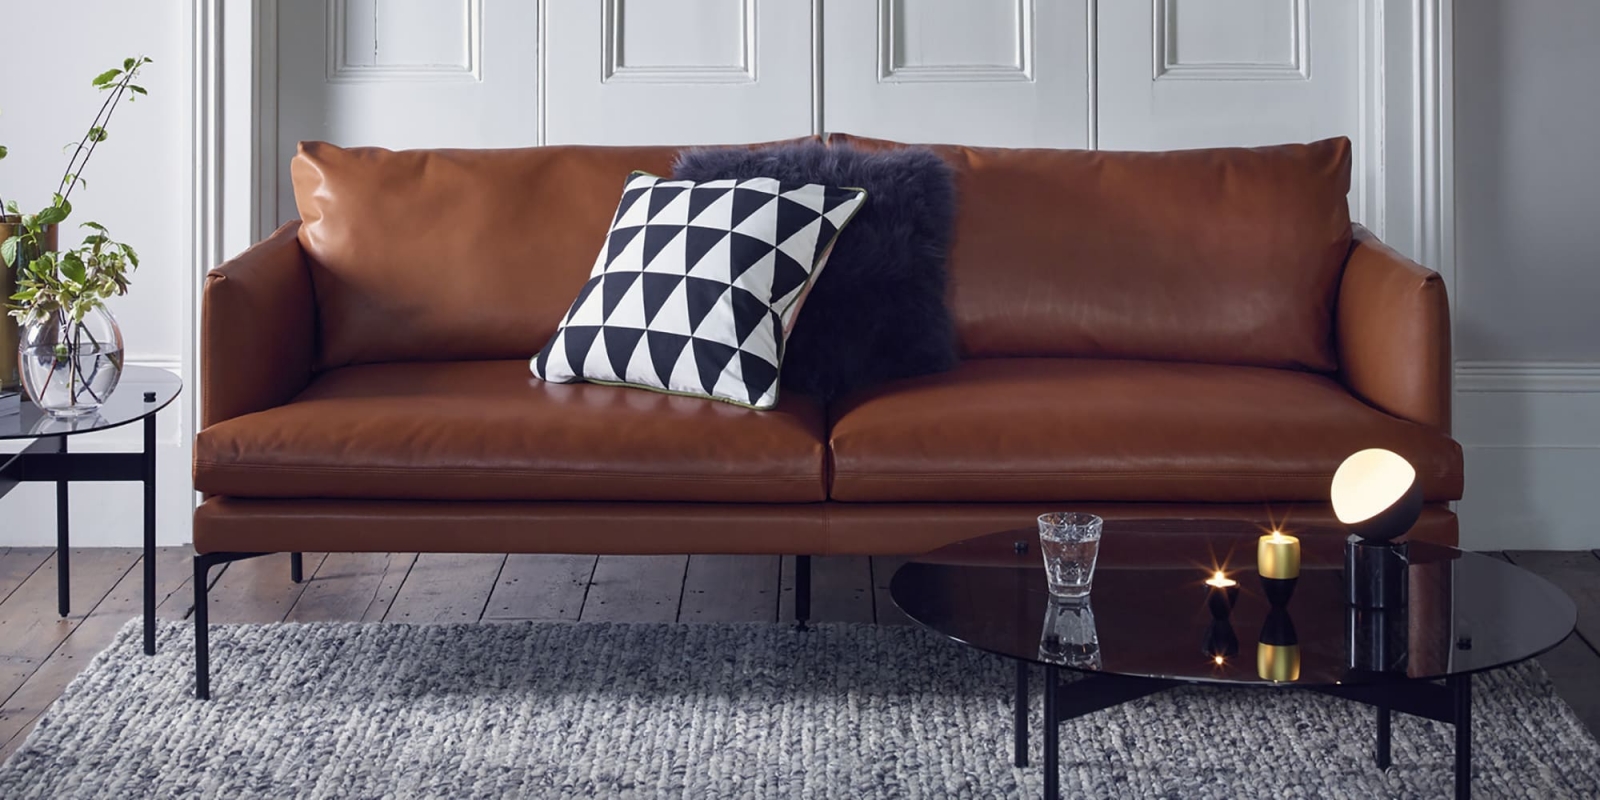 Ba bước chọn mua sofa da chất lượng và dịch vụ bọc ghế sofa giá rẻ